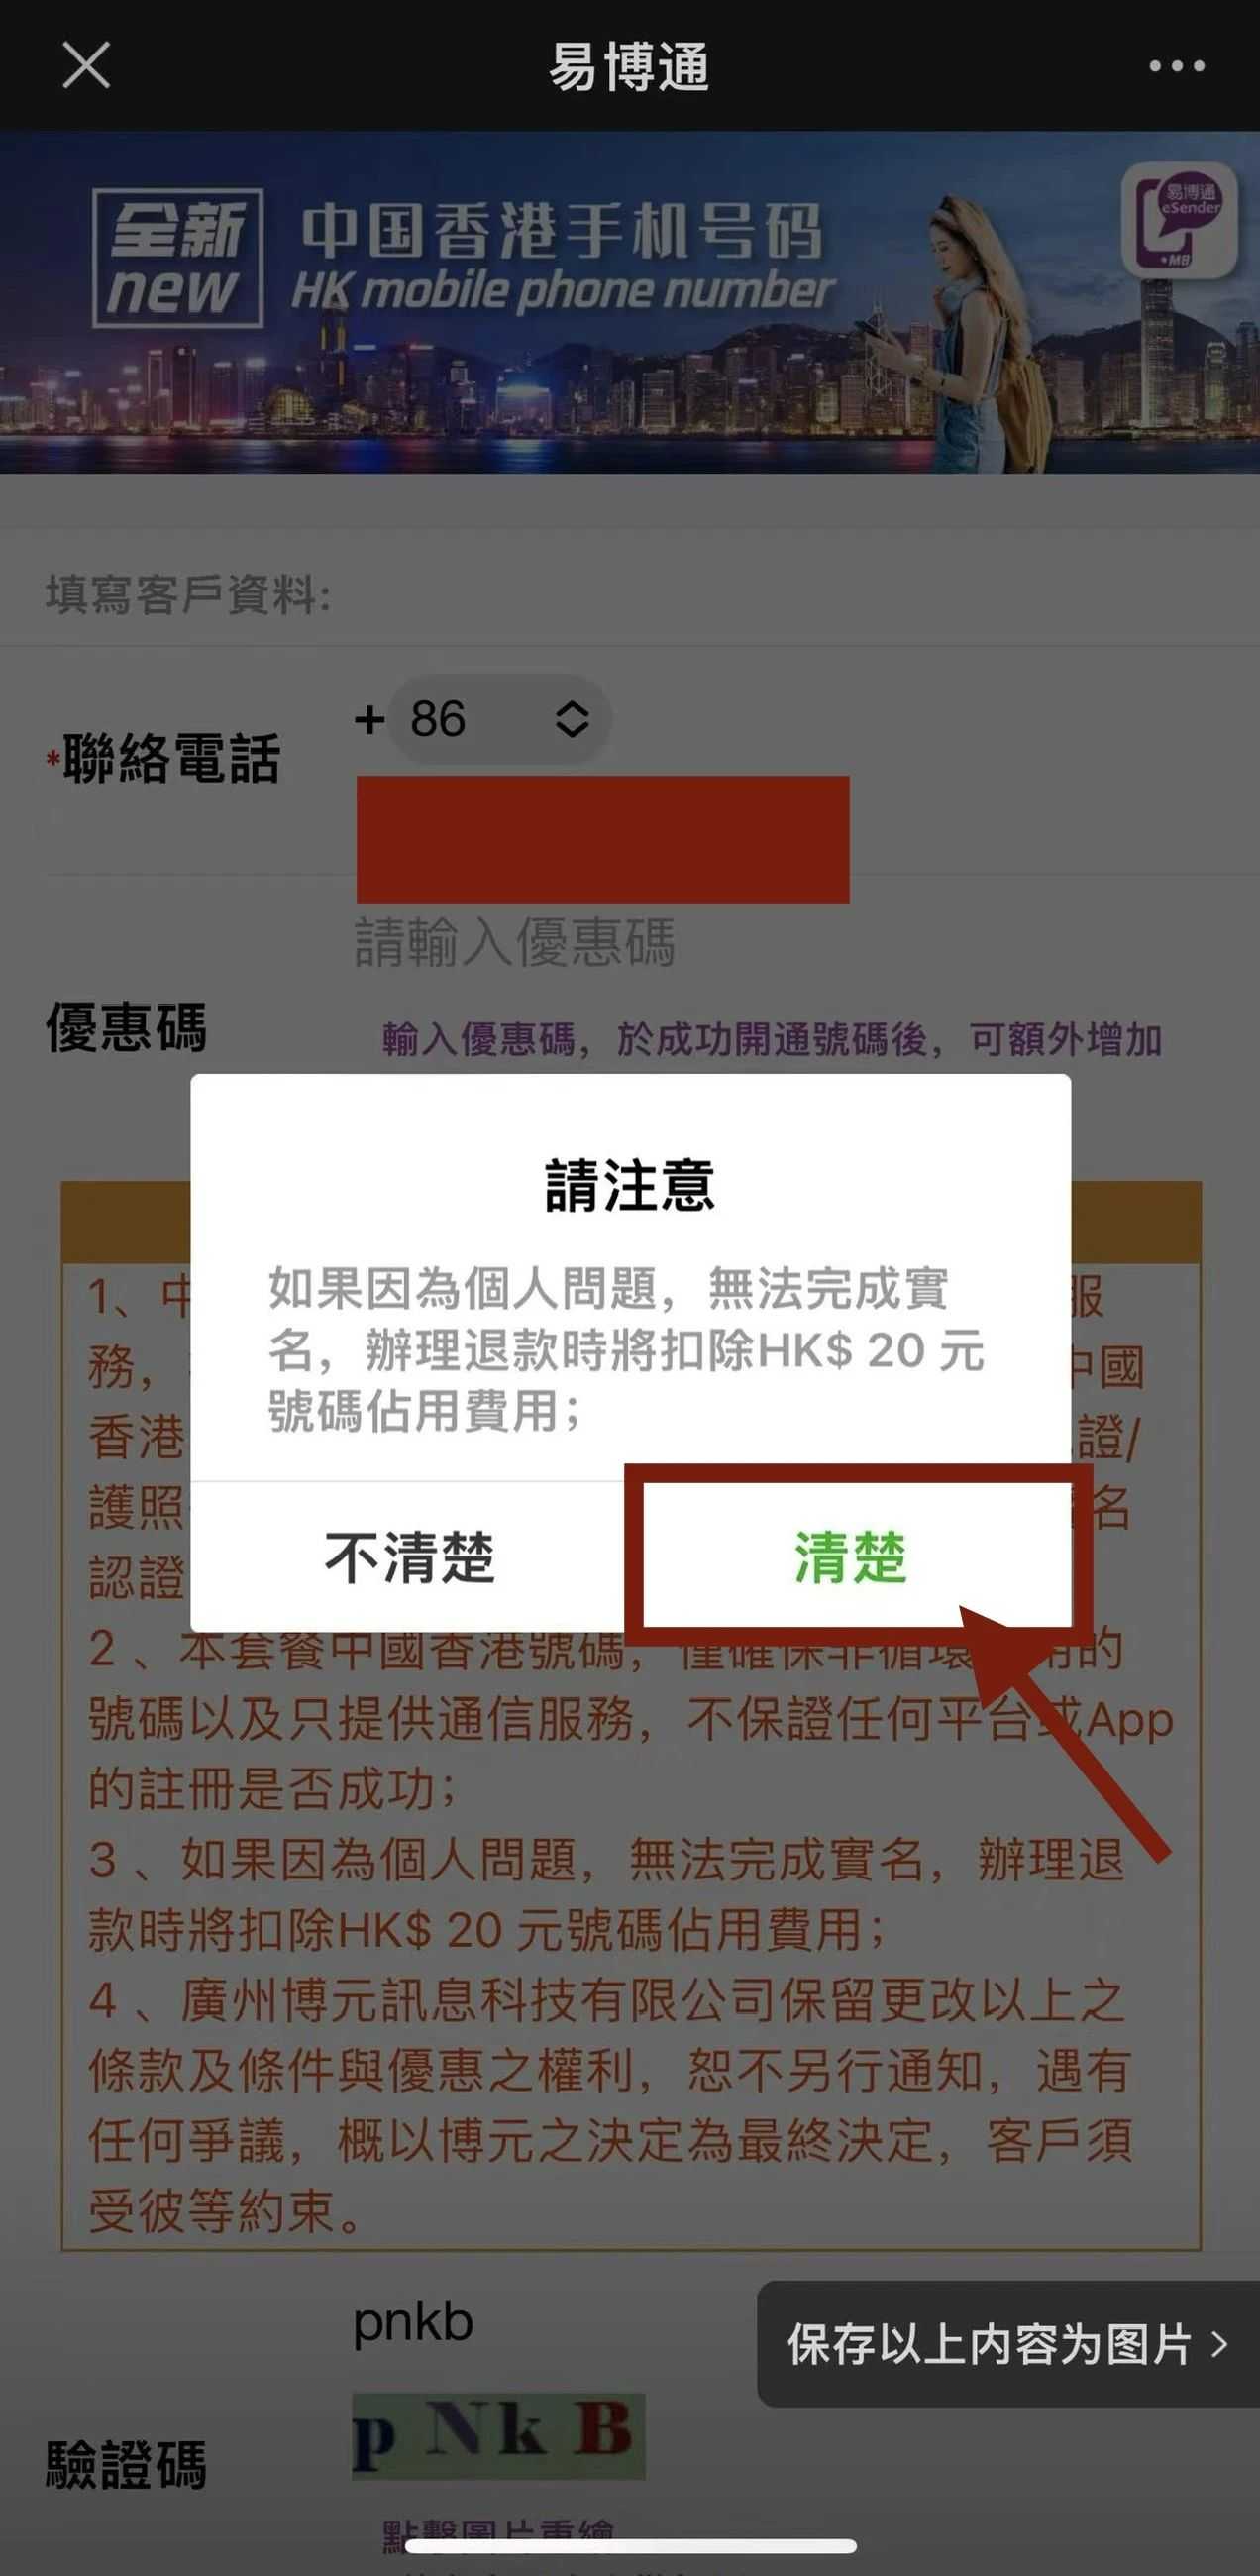 Lütfen unutmayın: Kişisel sorunlar nedeniyle gerçek adınızı tamamlayamıyorsanız, geri ödeme işlemi sırasında 10. HK doları tutarındaki kullanım ücreti kesilecektir.